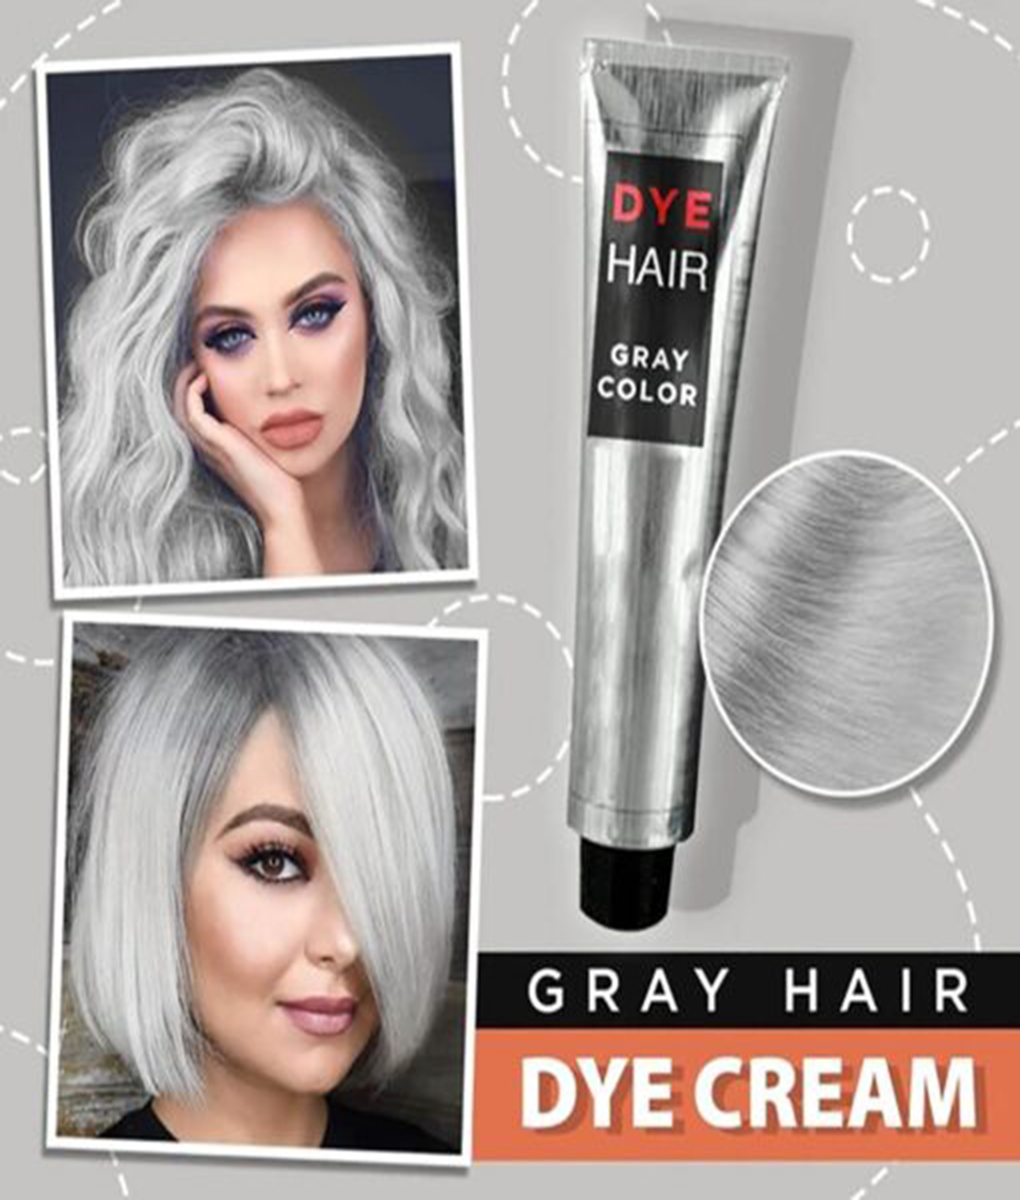 Hair Dye Cream - Niet verkocht in winkels